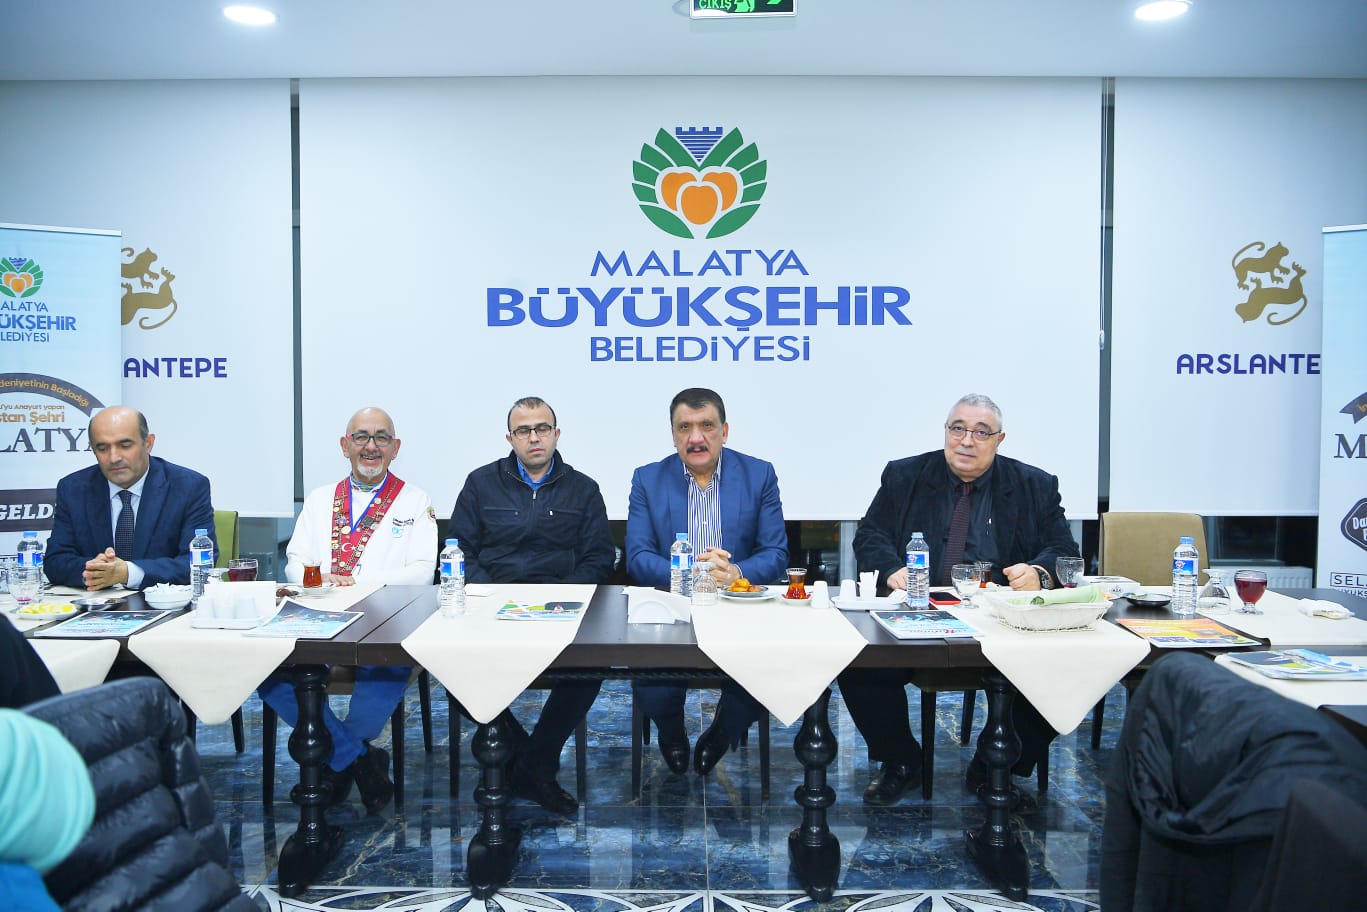 Malatya Büyükşehir Belediye Başkanı Selahattin Gürkan: “UNESCO’nun yerinde olsam yemeğe değil, mantığa bakarım”